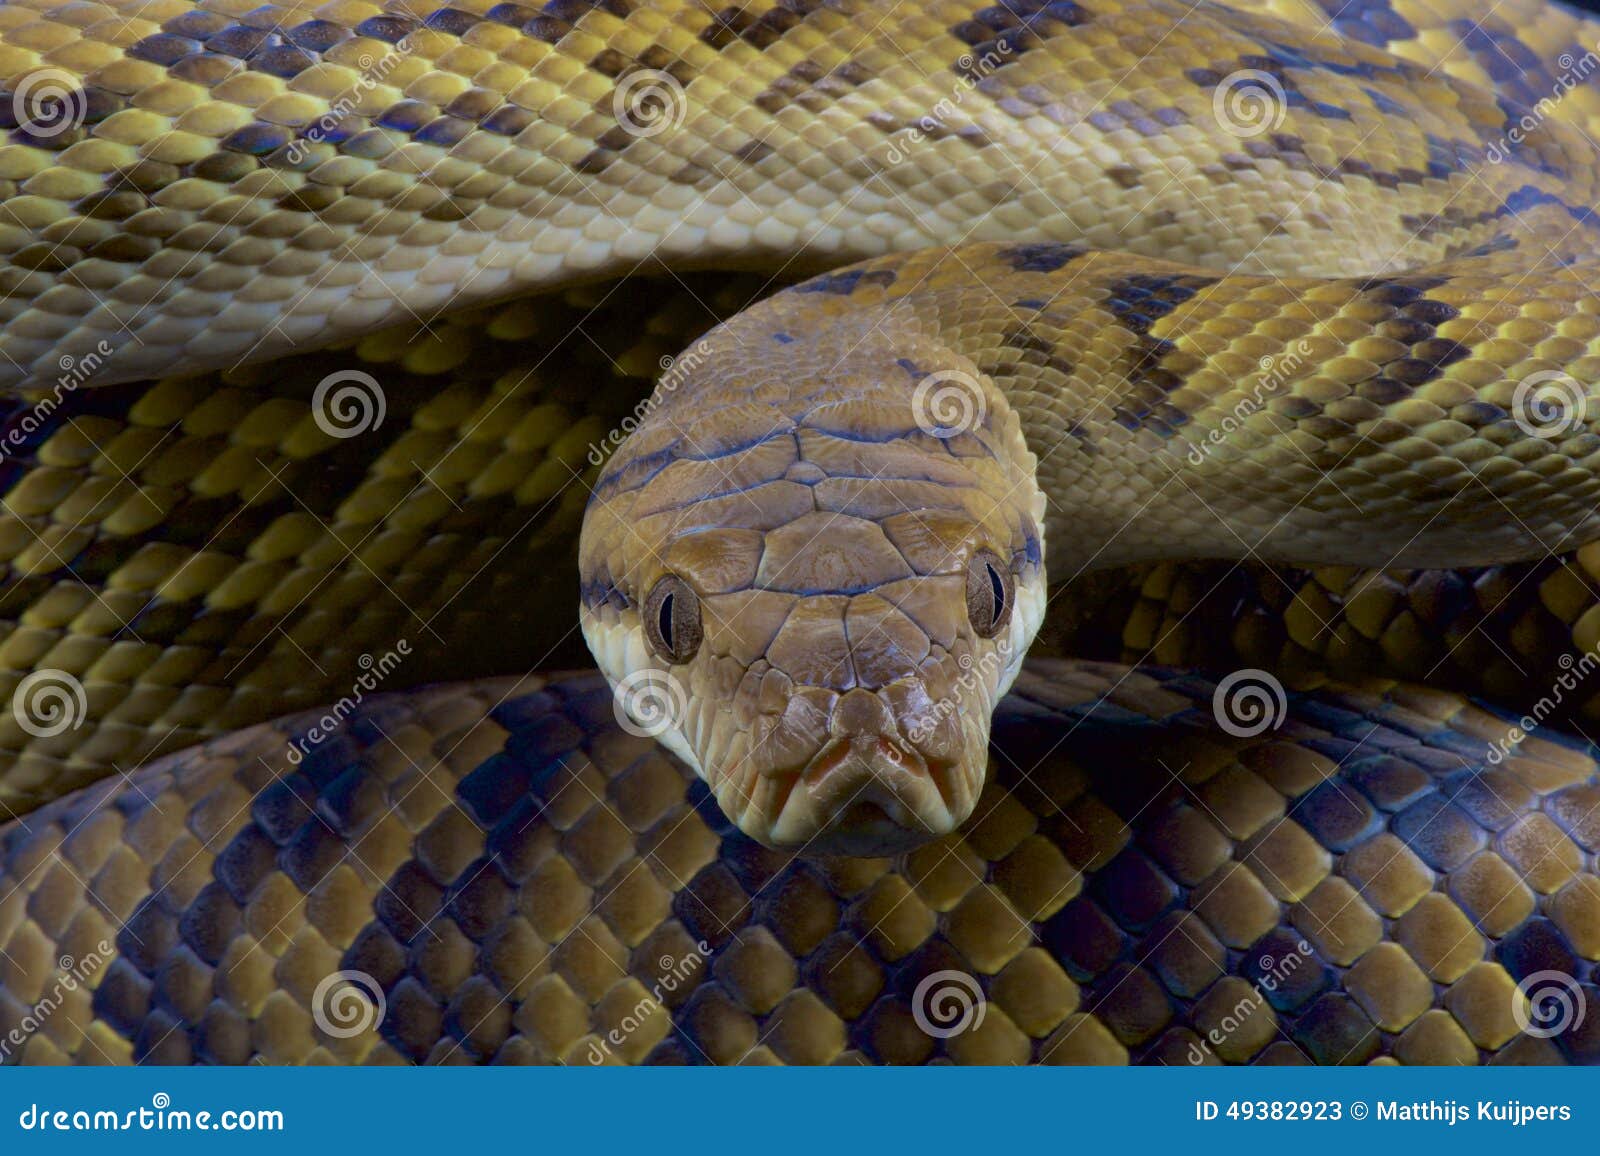 australian scrub python / morelia kinghorni